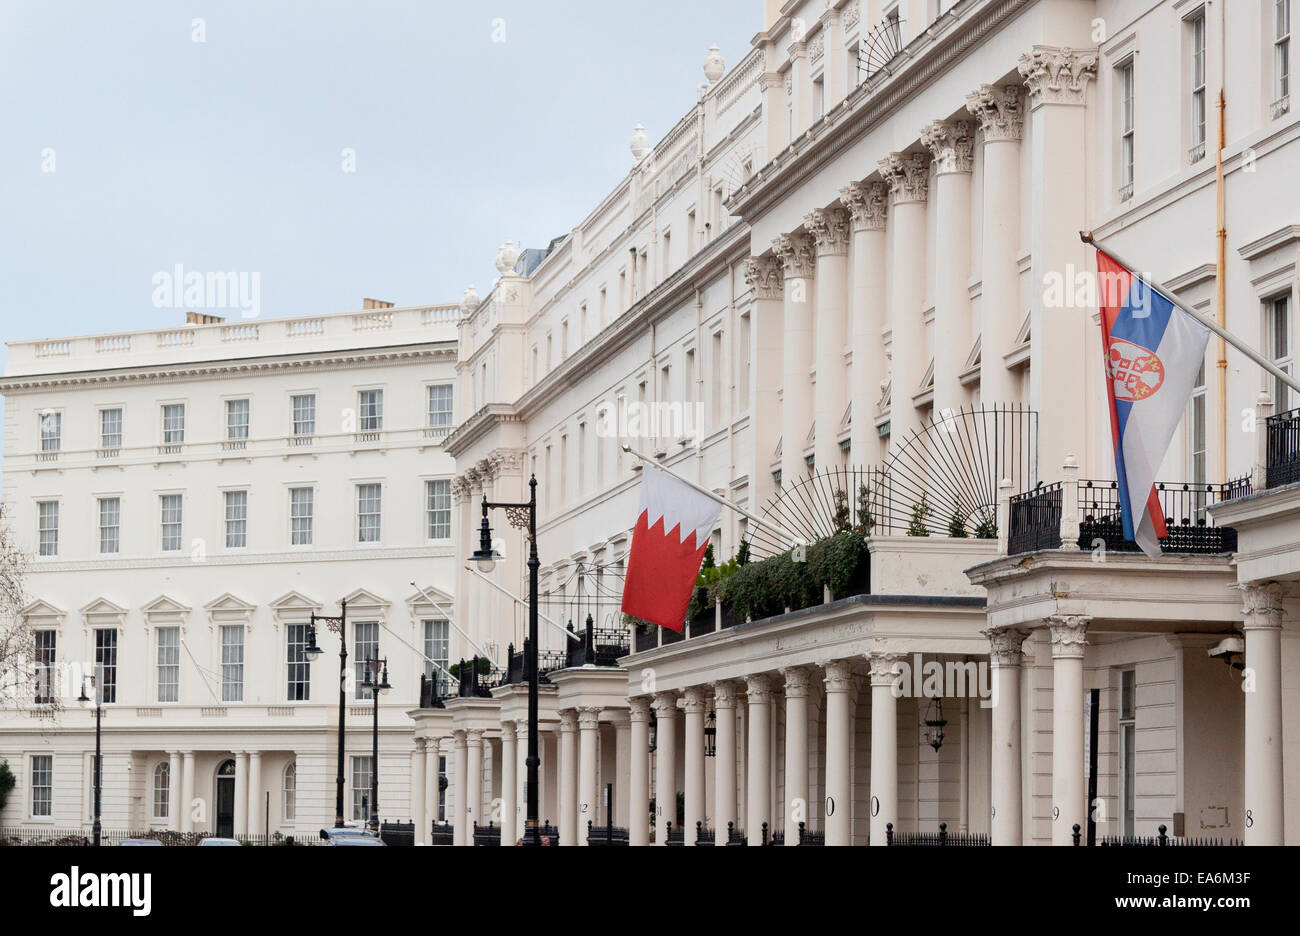 Eine Terrasse von Häusern in Belgravia London, viele von ausländischen Botschaften oder Konsulate besetzt. Dies ist Belgrave Square. Stockfoto